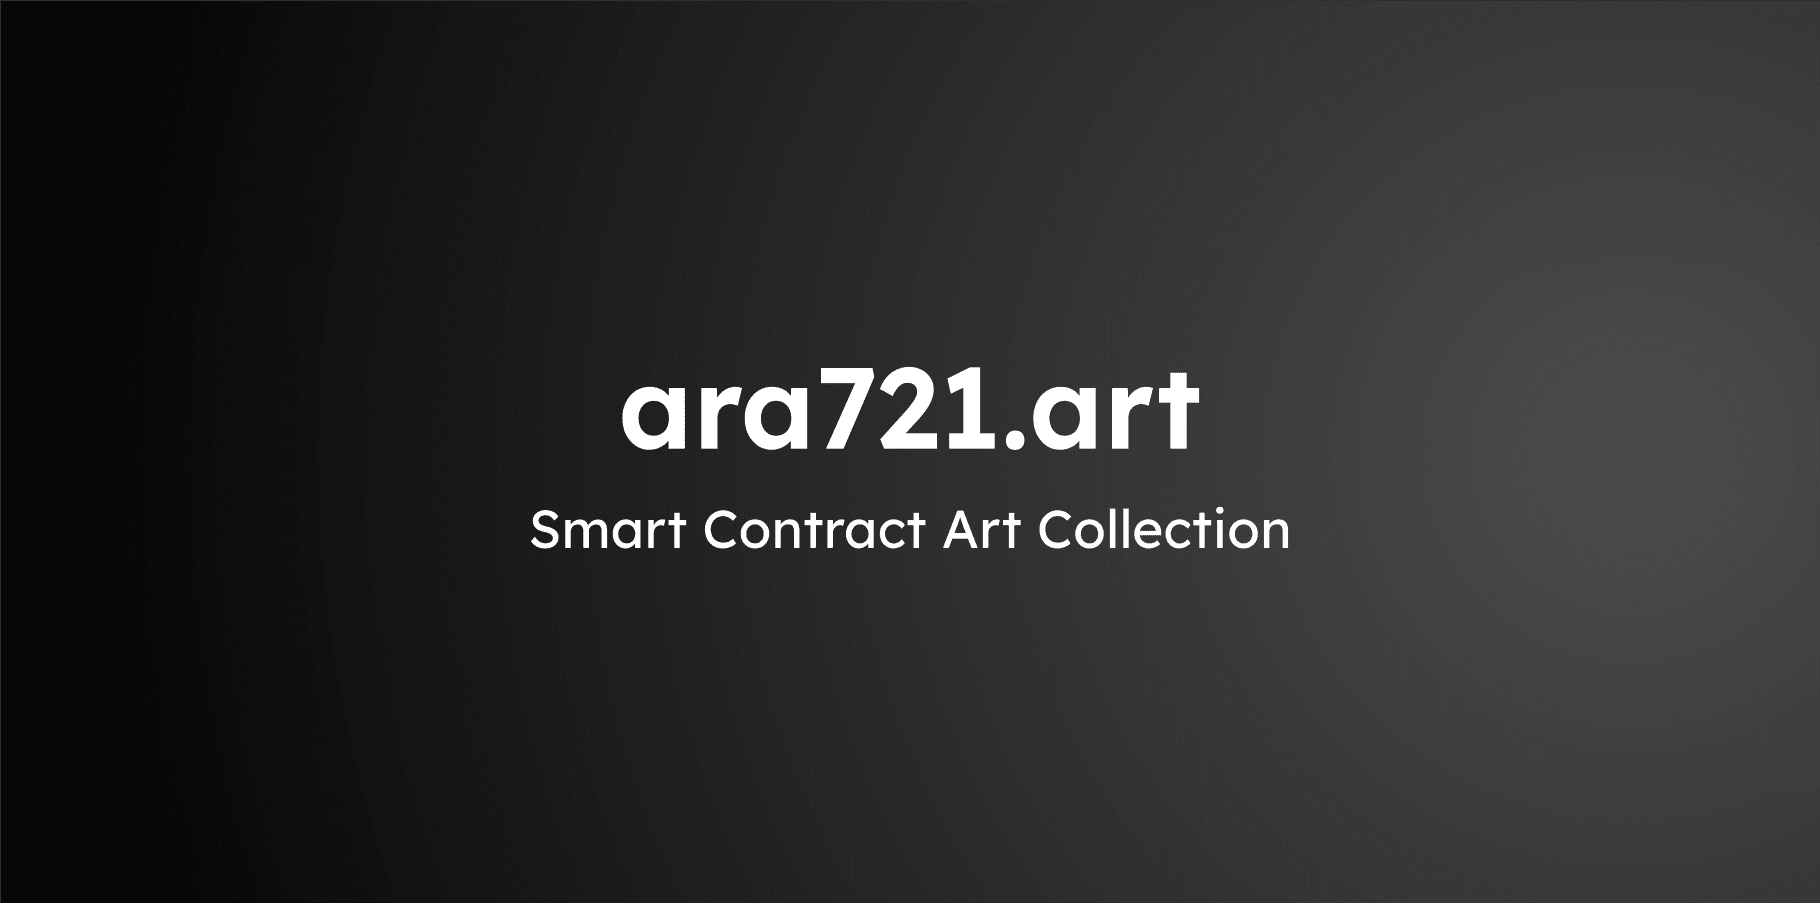 ara721_art Banner